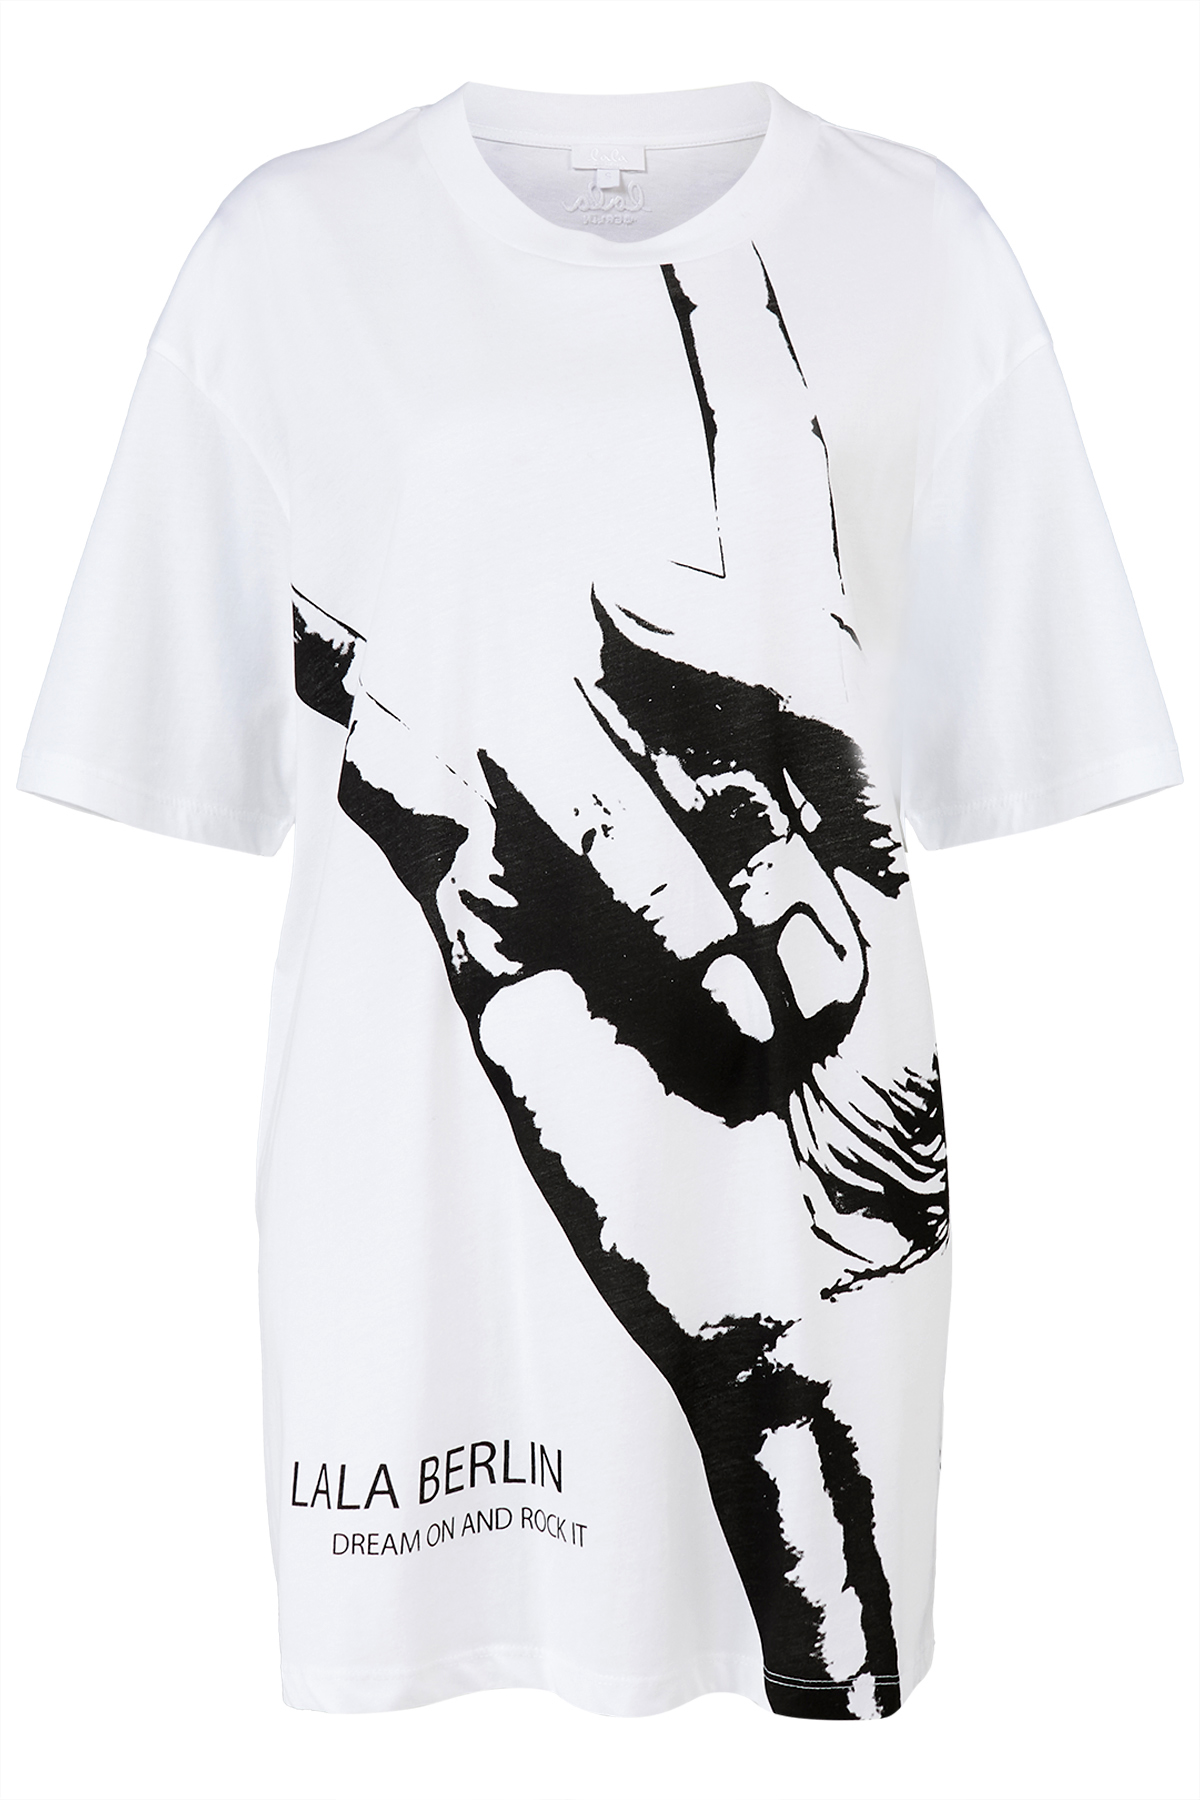 T-Shirt Irene Rockhand | BERLIN